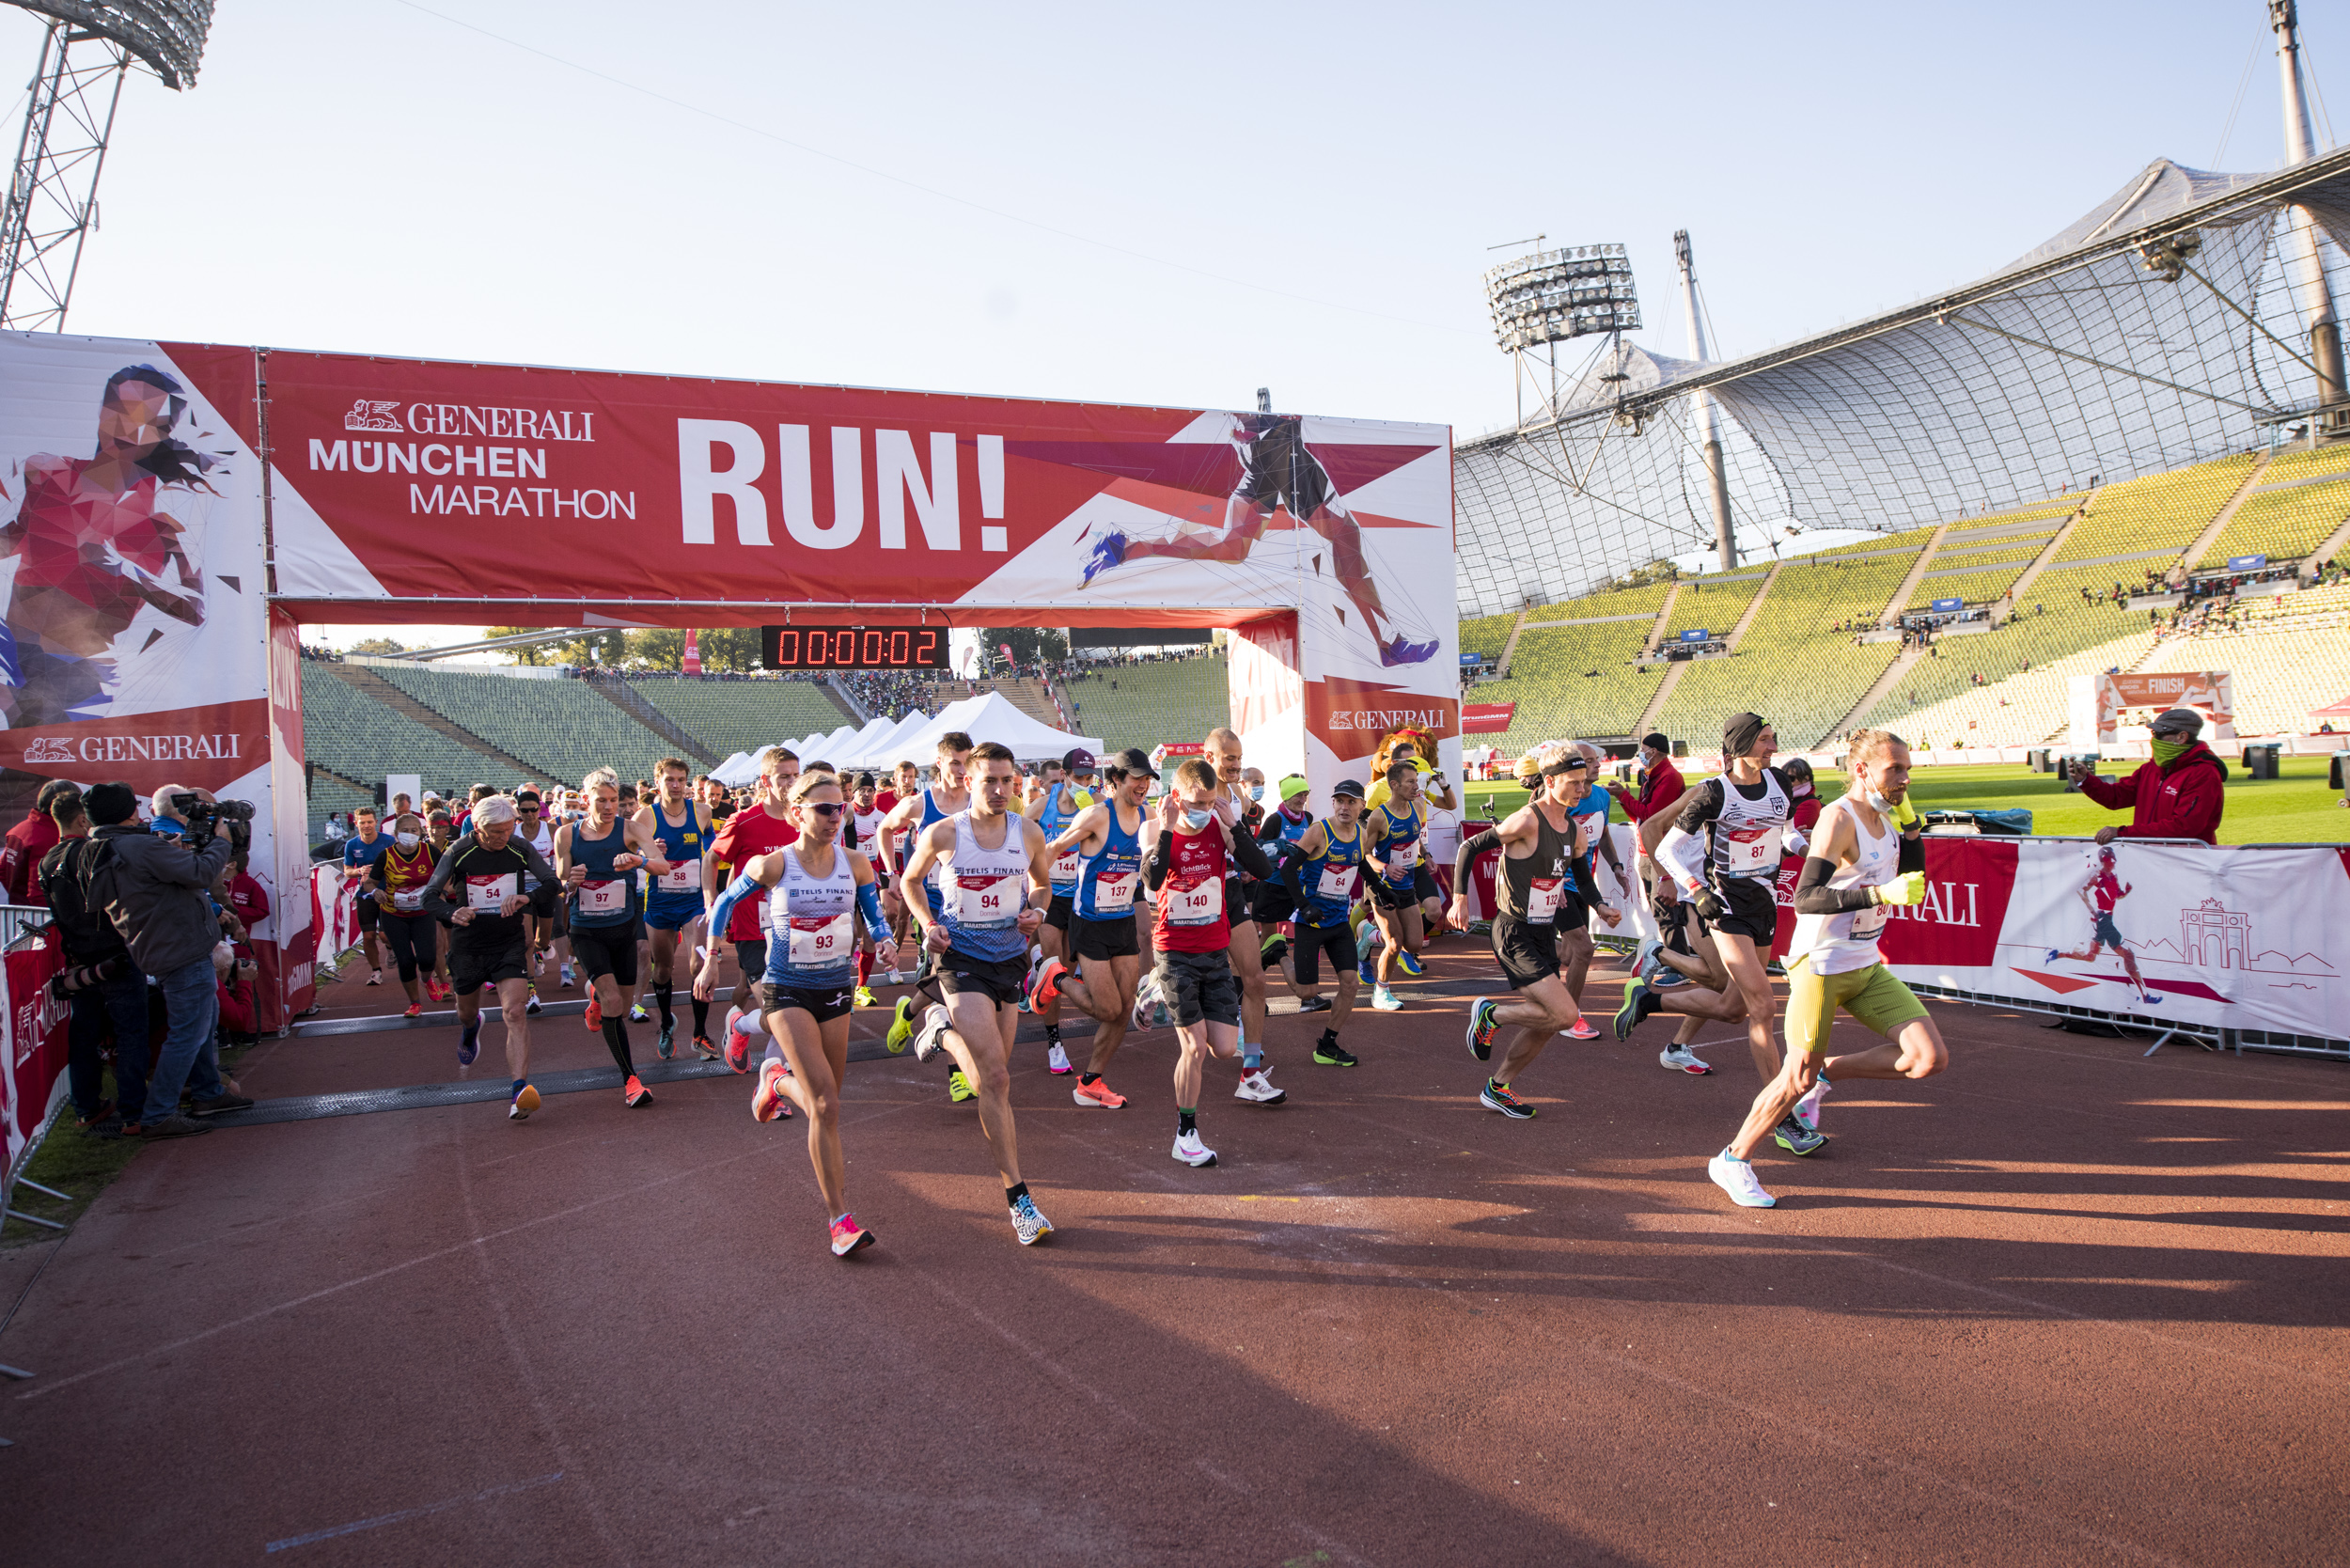 Läufer beim Start des Generali München Marathon 2021